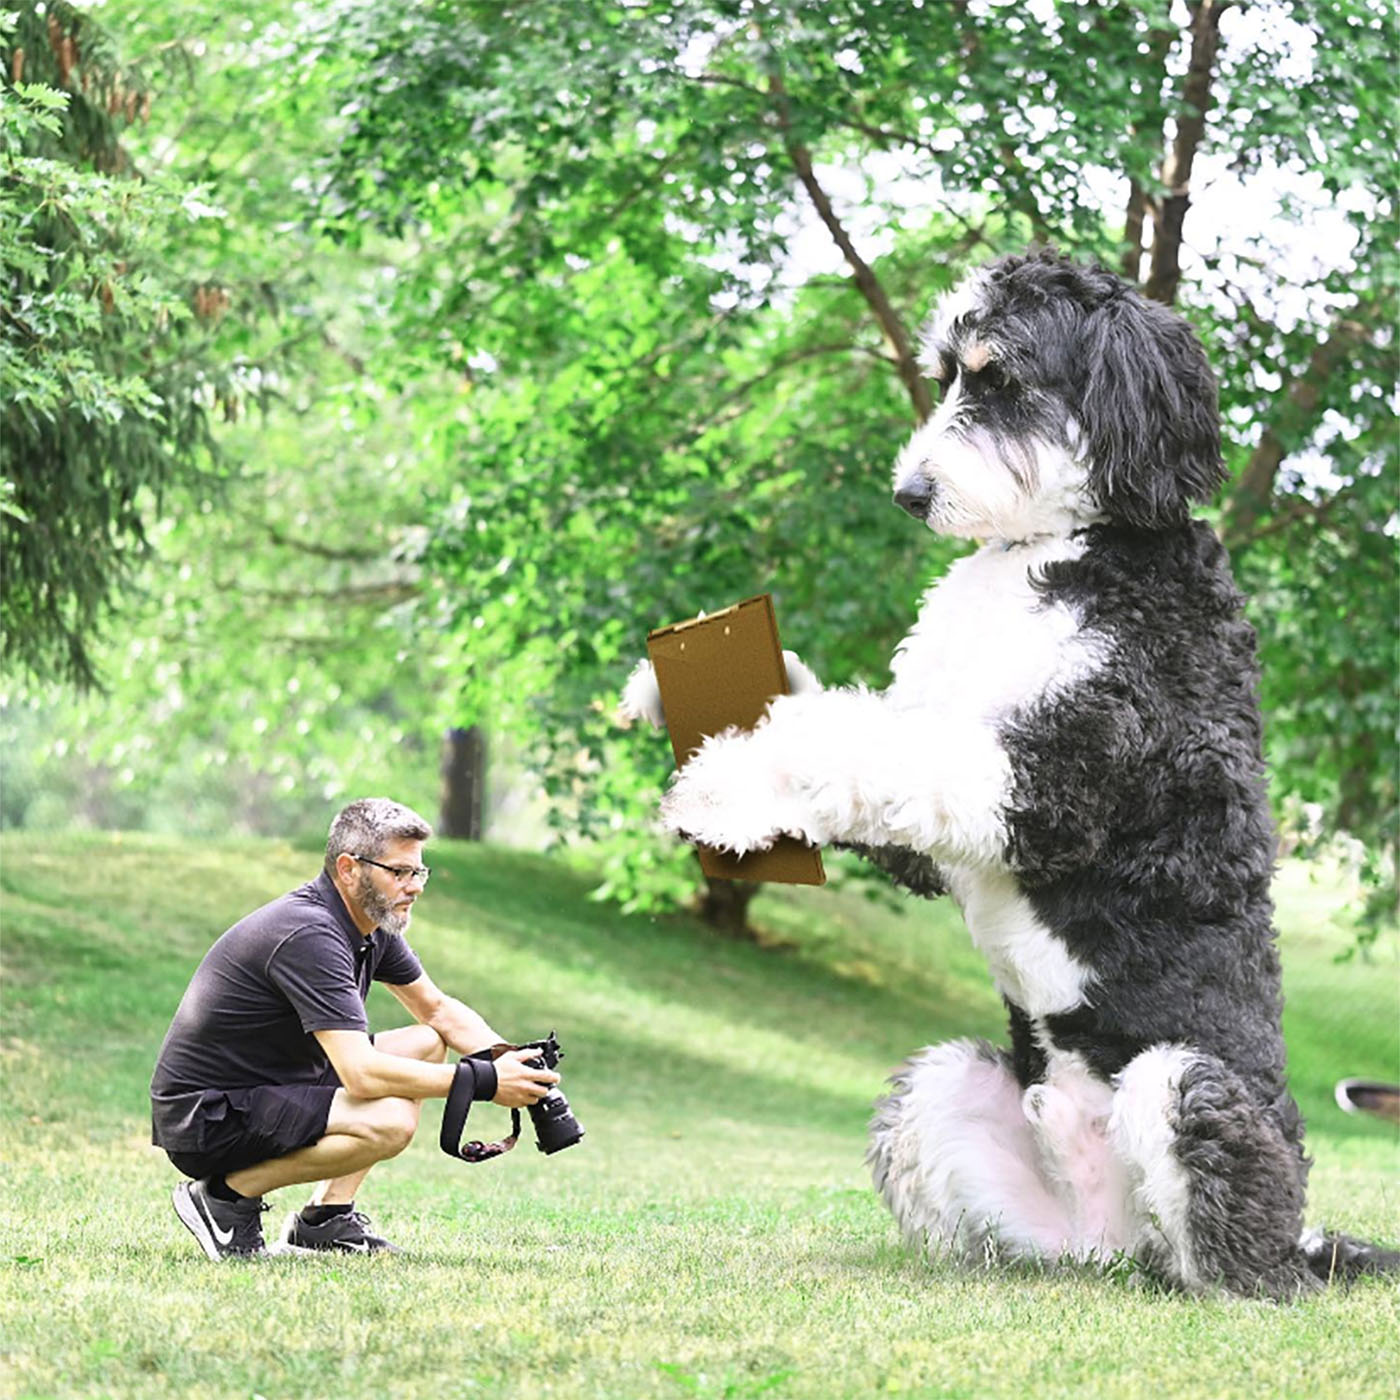 Christopher Cline com sua câmera em mãos e seu cachorro gigante segurando uma prancheta no parque